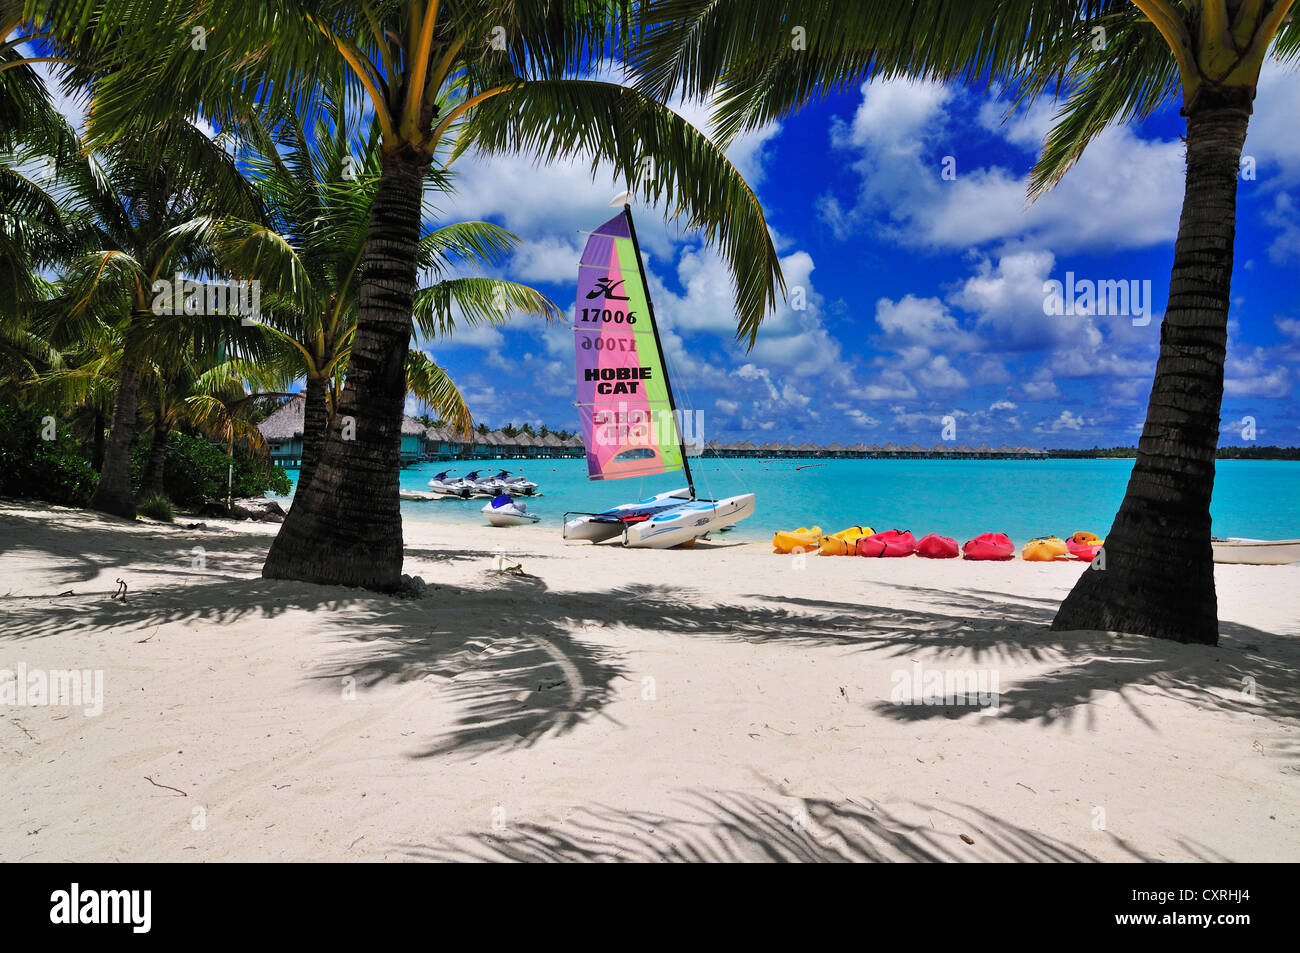 St Regis Resort Bora Bora, Bora Bora, Iles sous le Vent, îles de la société, Polynésie française, l'Océan Pacifique Banque D'Images